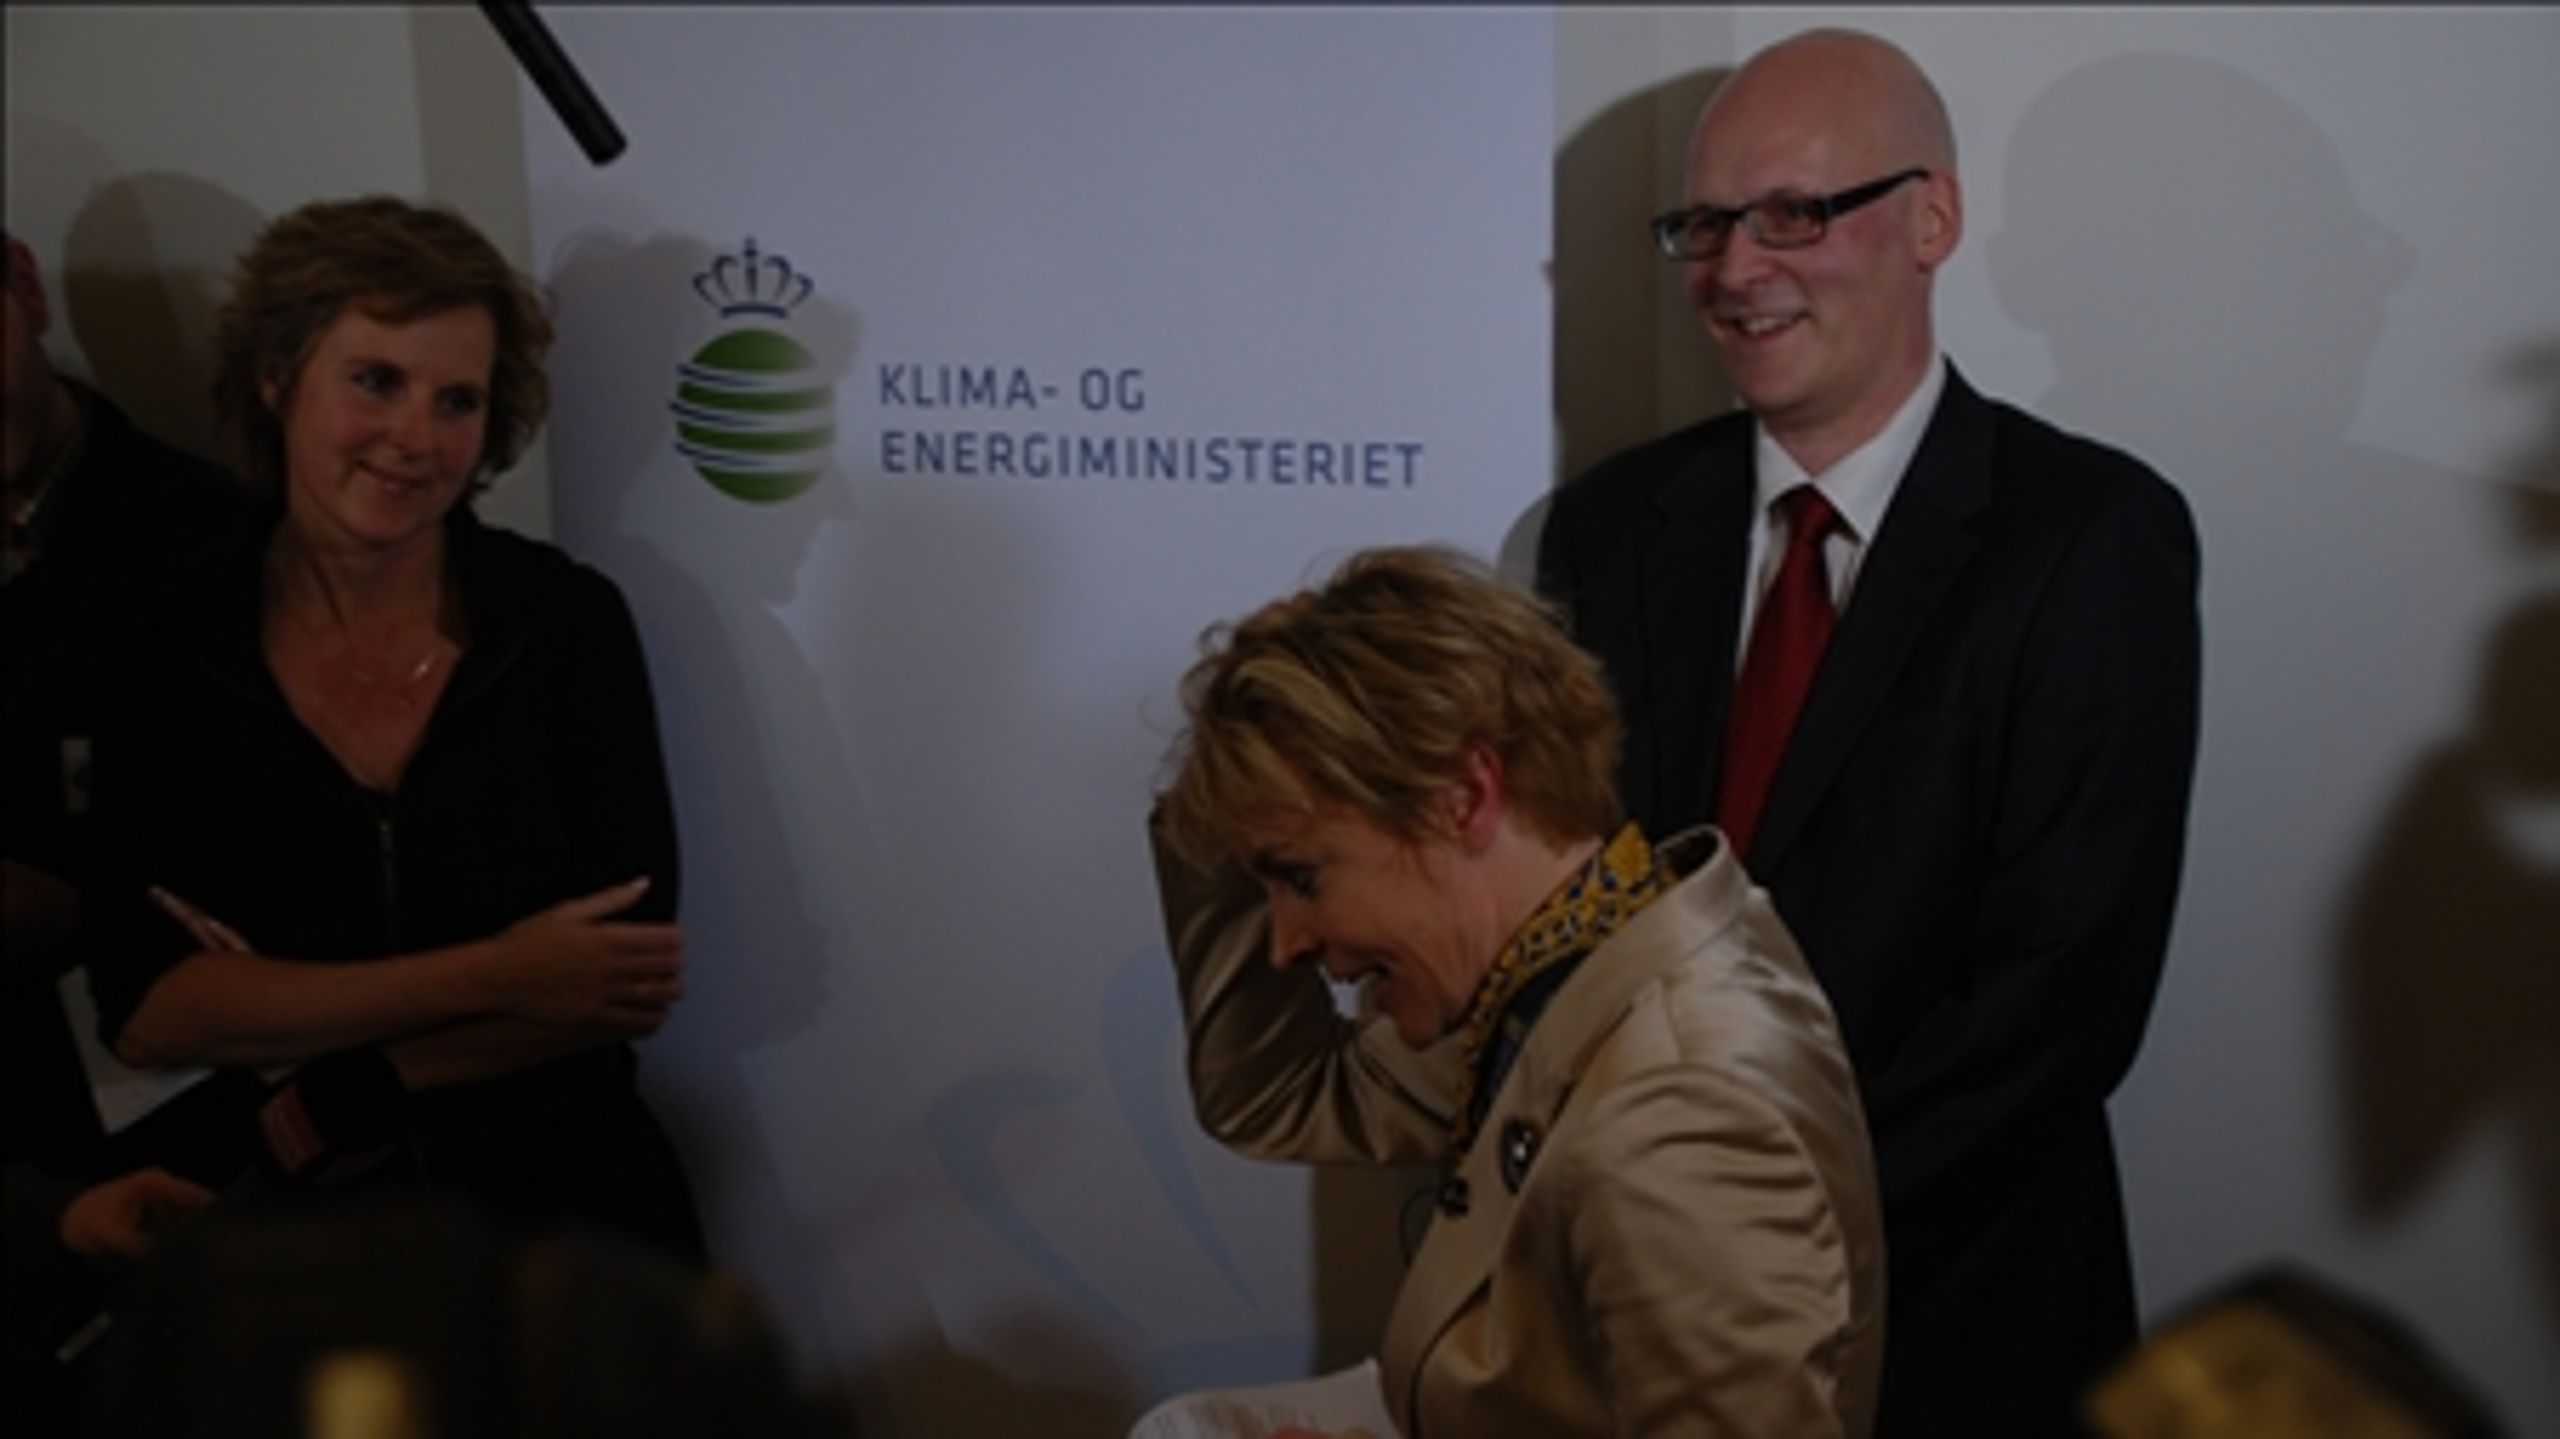 Selvom den nye klimaminister Lykke Friis (th.) er god i medierne, kan regeringen f&#229; sv&#230;rt ved appellere til forg&#230;ngeren Connie Hedegaards (K) v&#230;lgere.